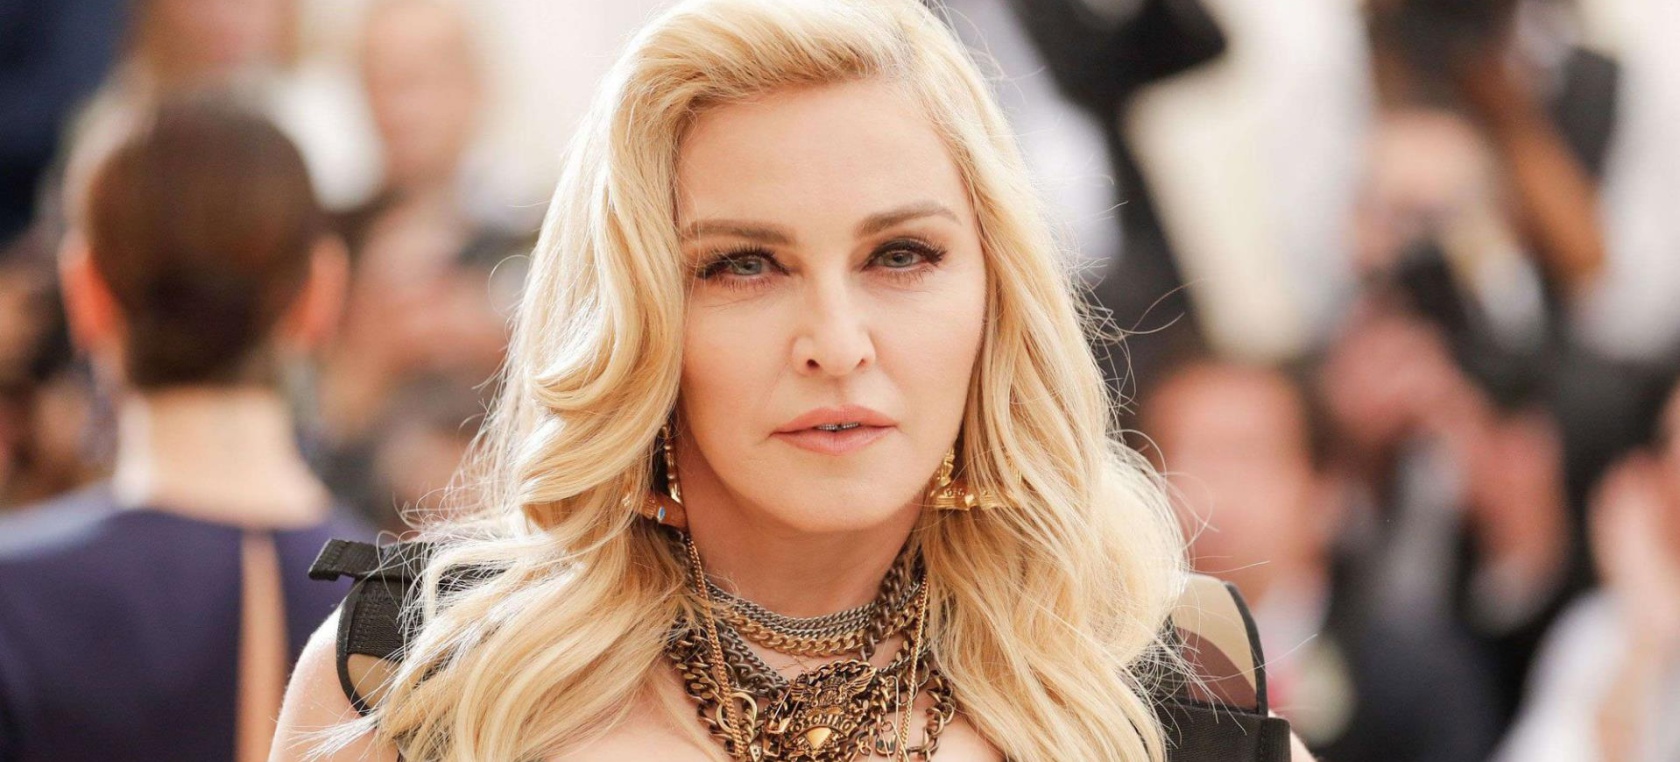 Madonna habló sobre las acusaciones en contra de Michael Jackson en ‘Leaving Neverland’. Cusica Plus.